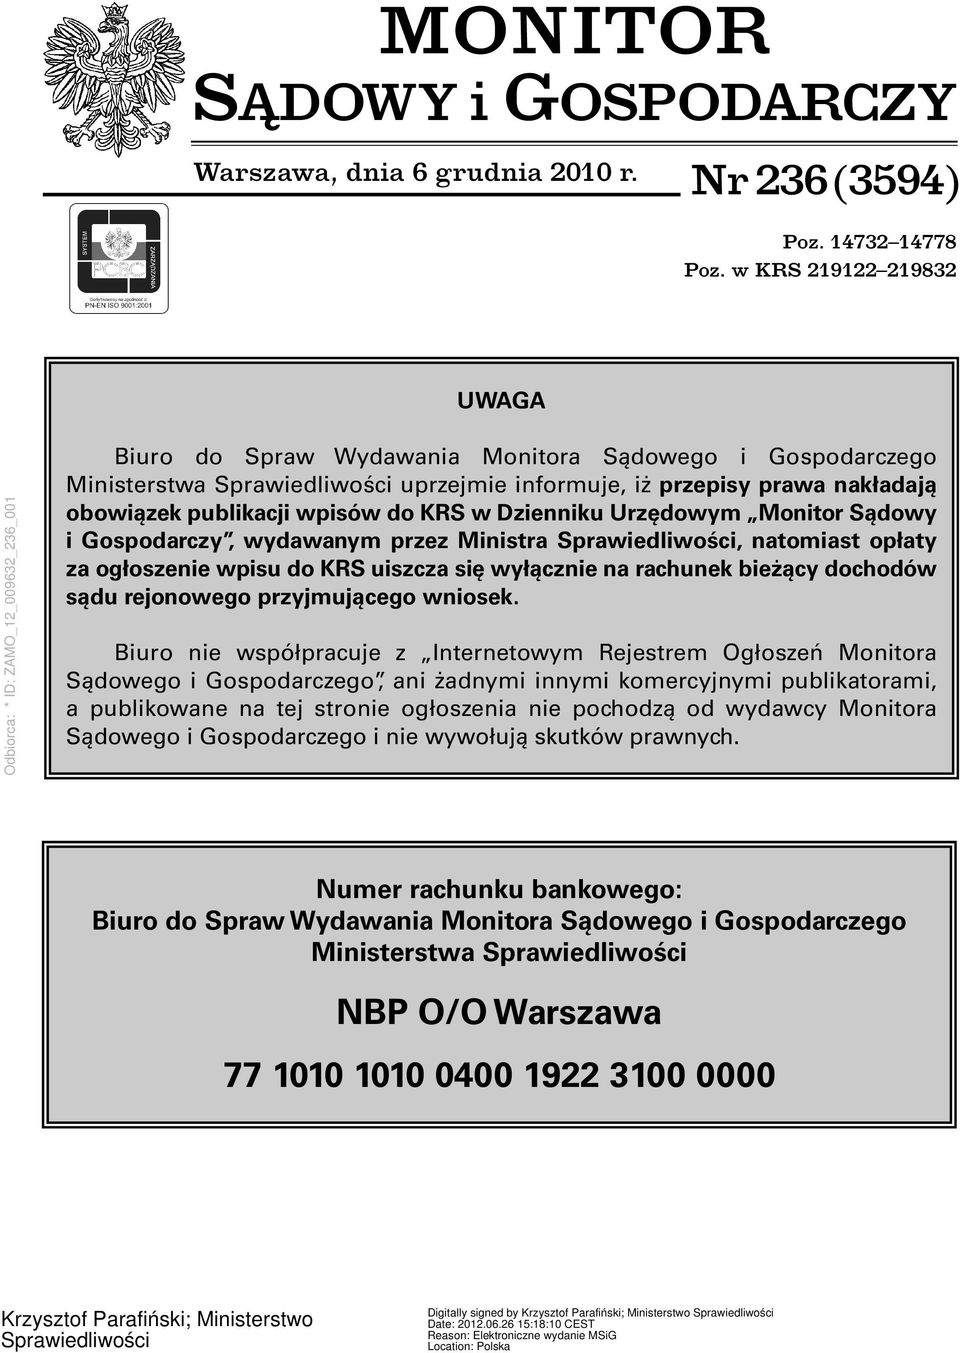 MONITOR SĄDOWY i GOSPODARCZY - PDF Free Download